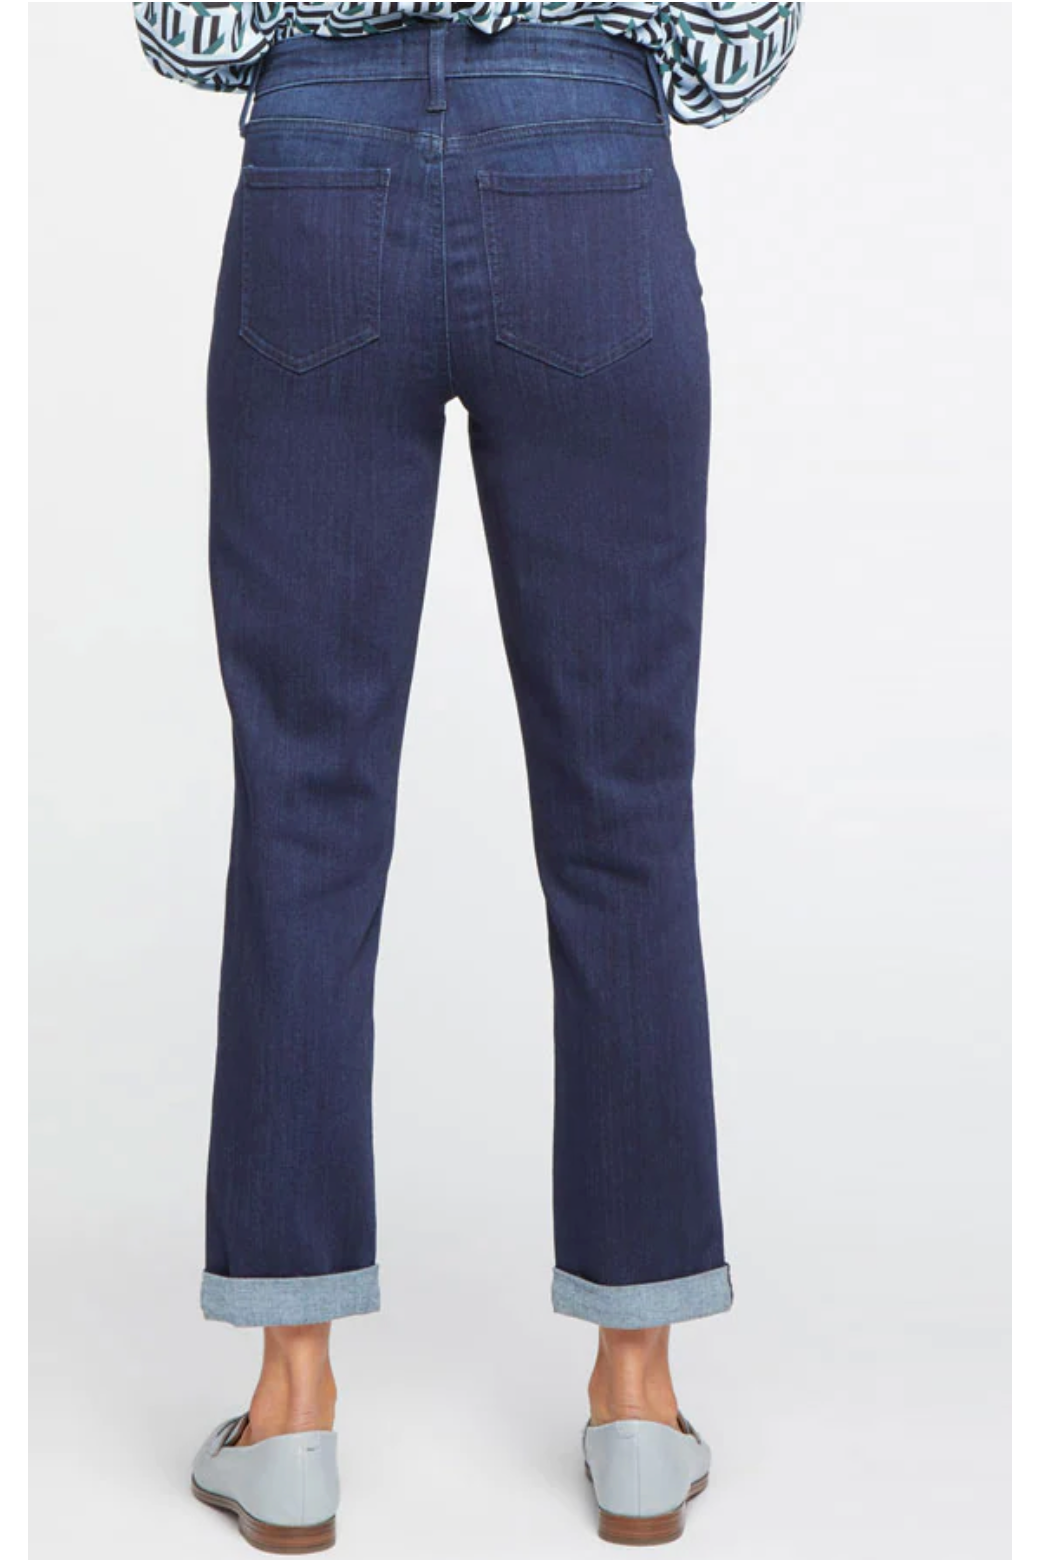 NYDJ - Margot Girlfriend Jeans In Sure Stretch® Denim With Roll Cuffs - Highway